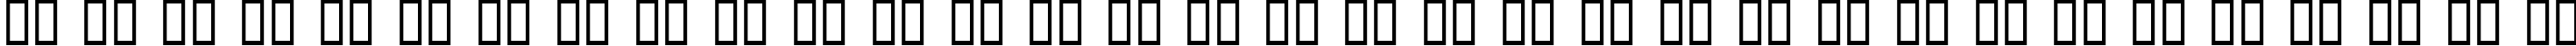 Пример написания русского алфавита шрифтом HotTamale